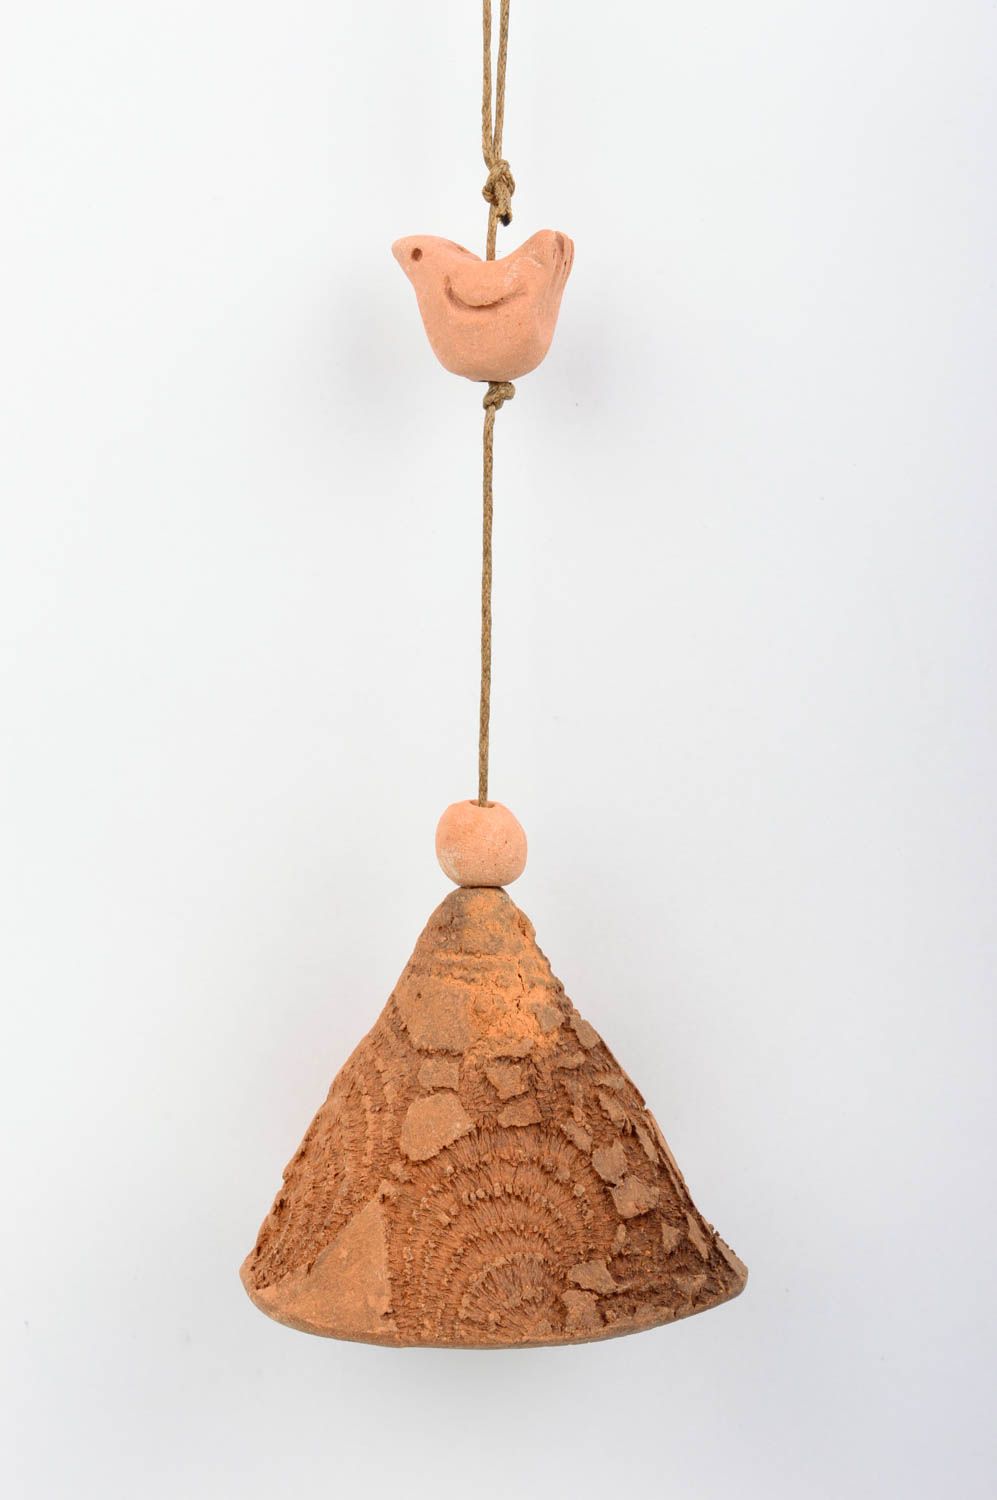 Авторский глиняный колокольчик ручной работы на шнурке украшенный птичкой фото 1